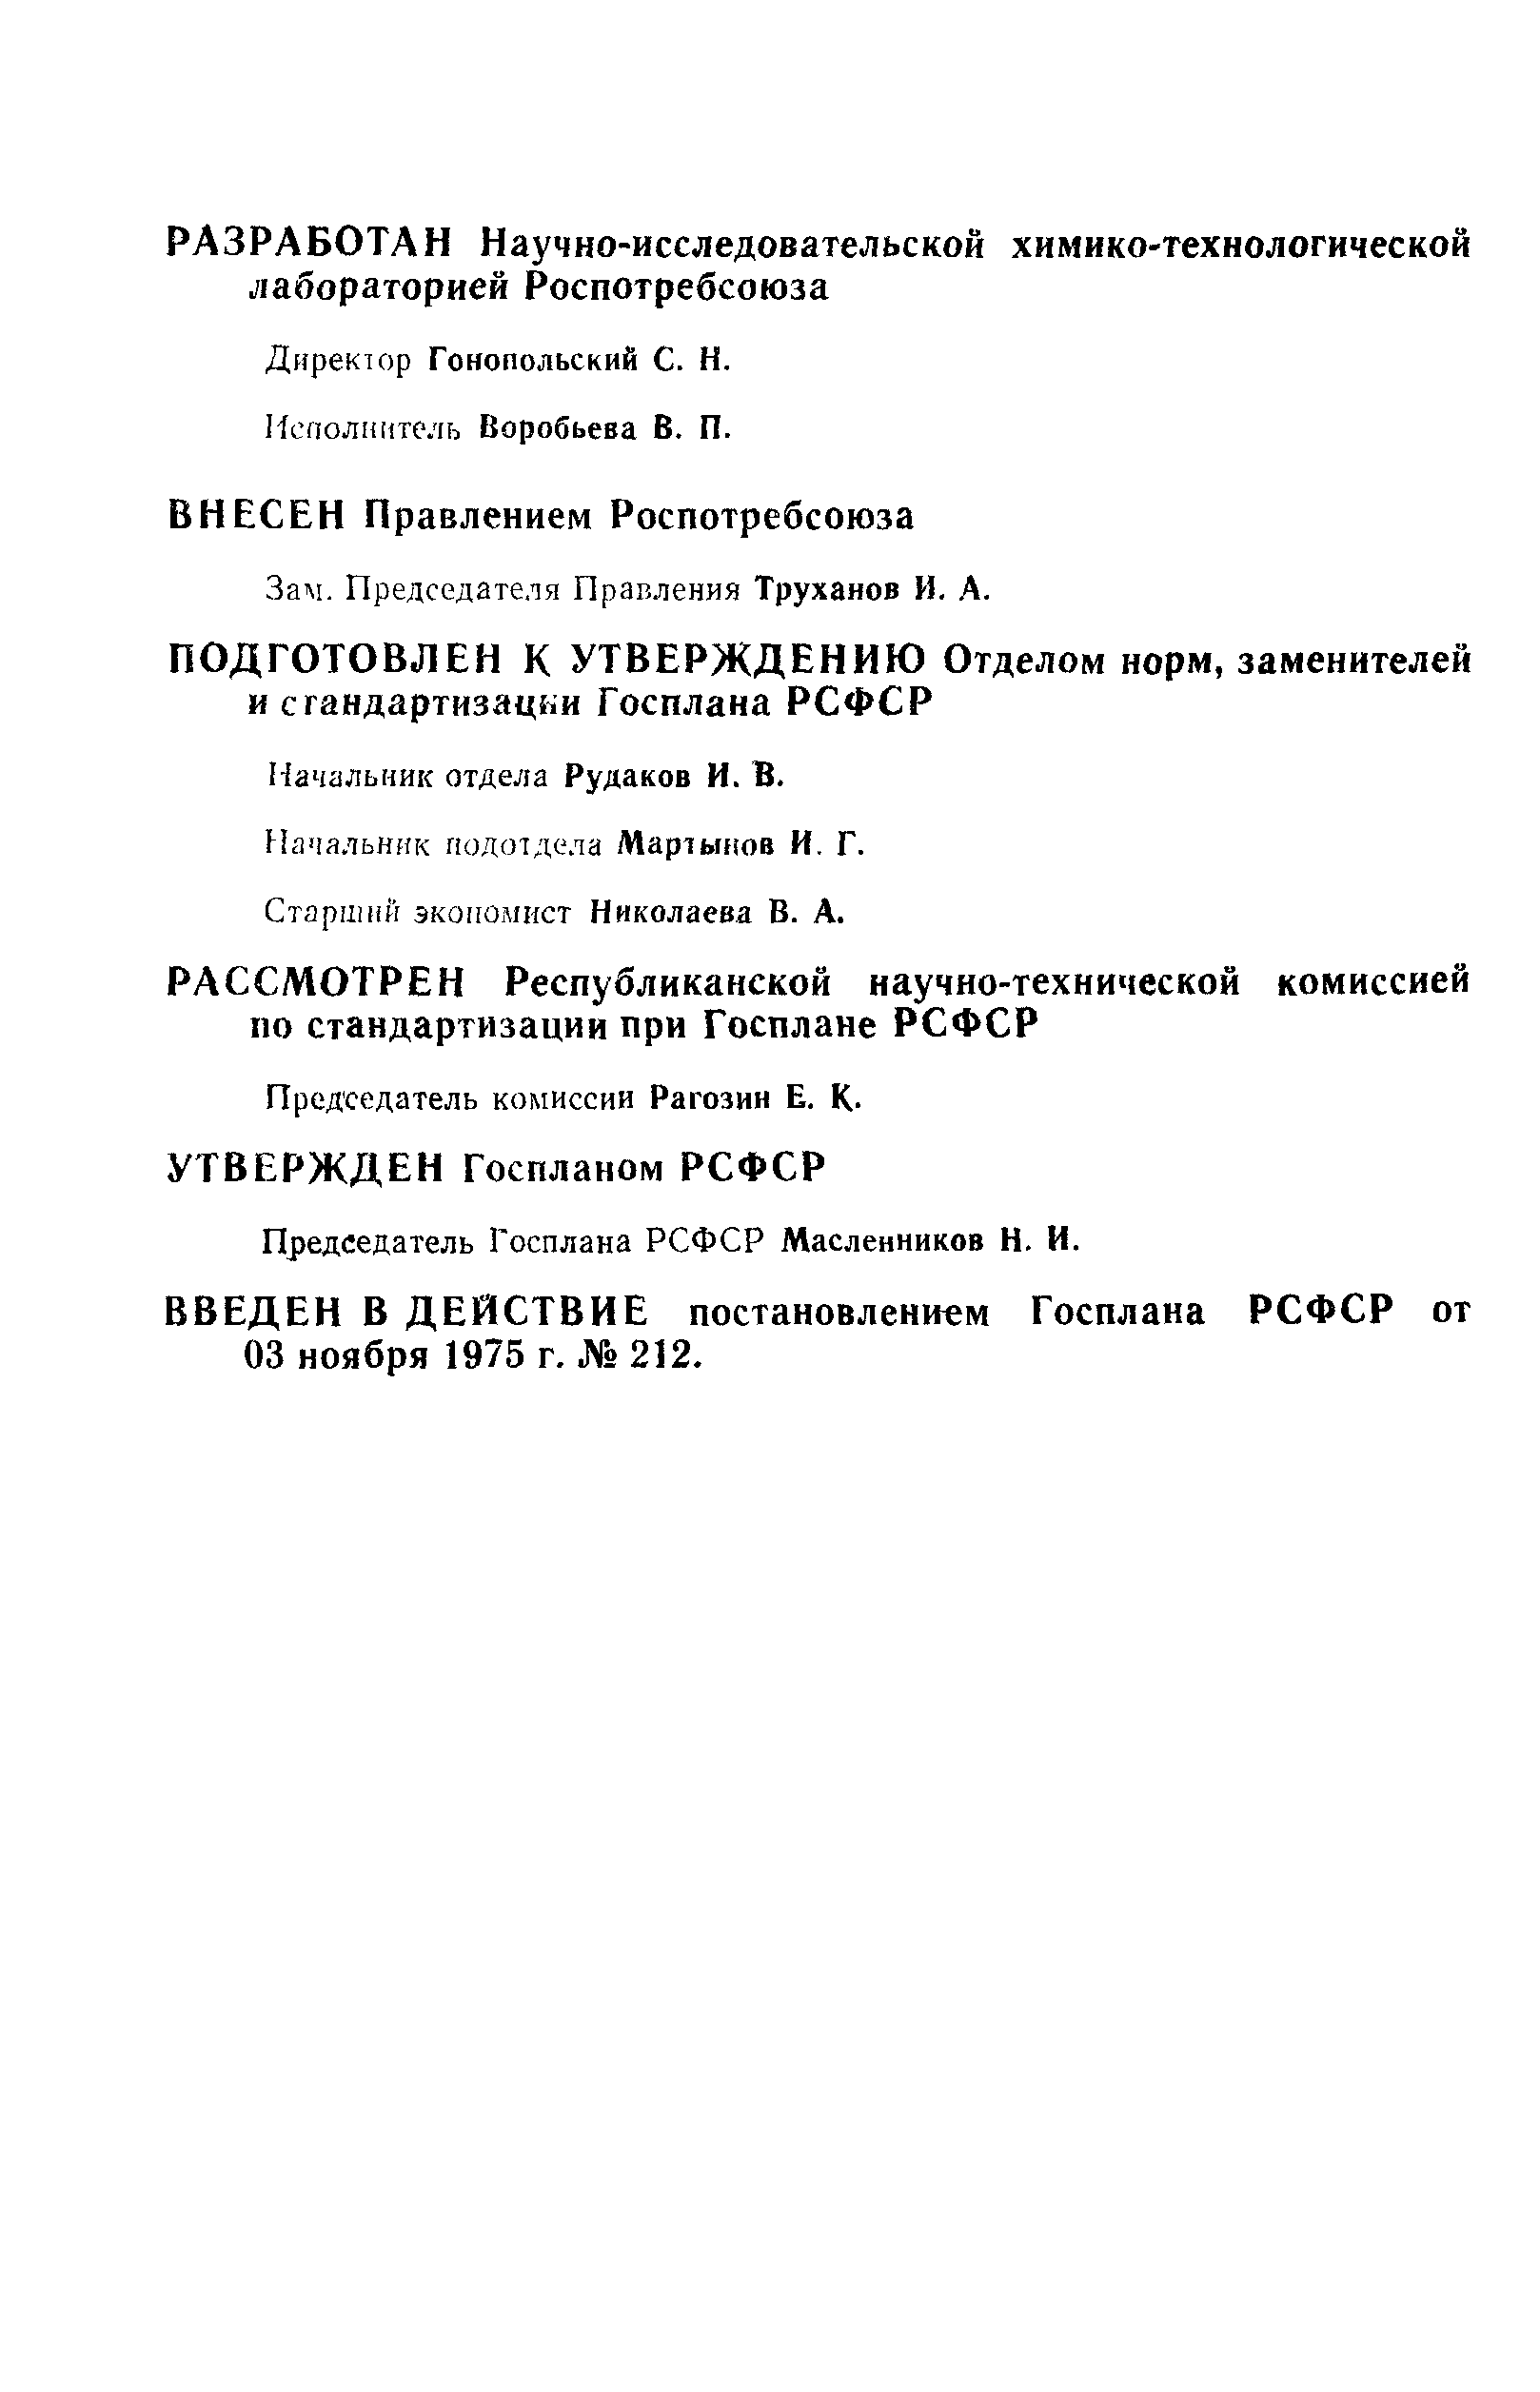 РСТ РСФСР 24-75